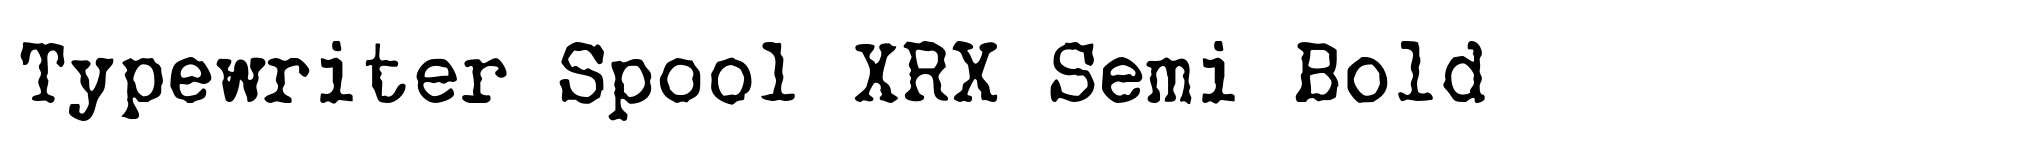 Typewriter Spool XRX Semi Bold image